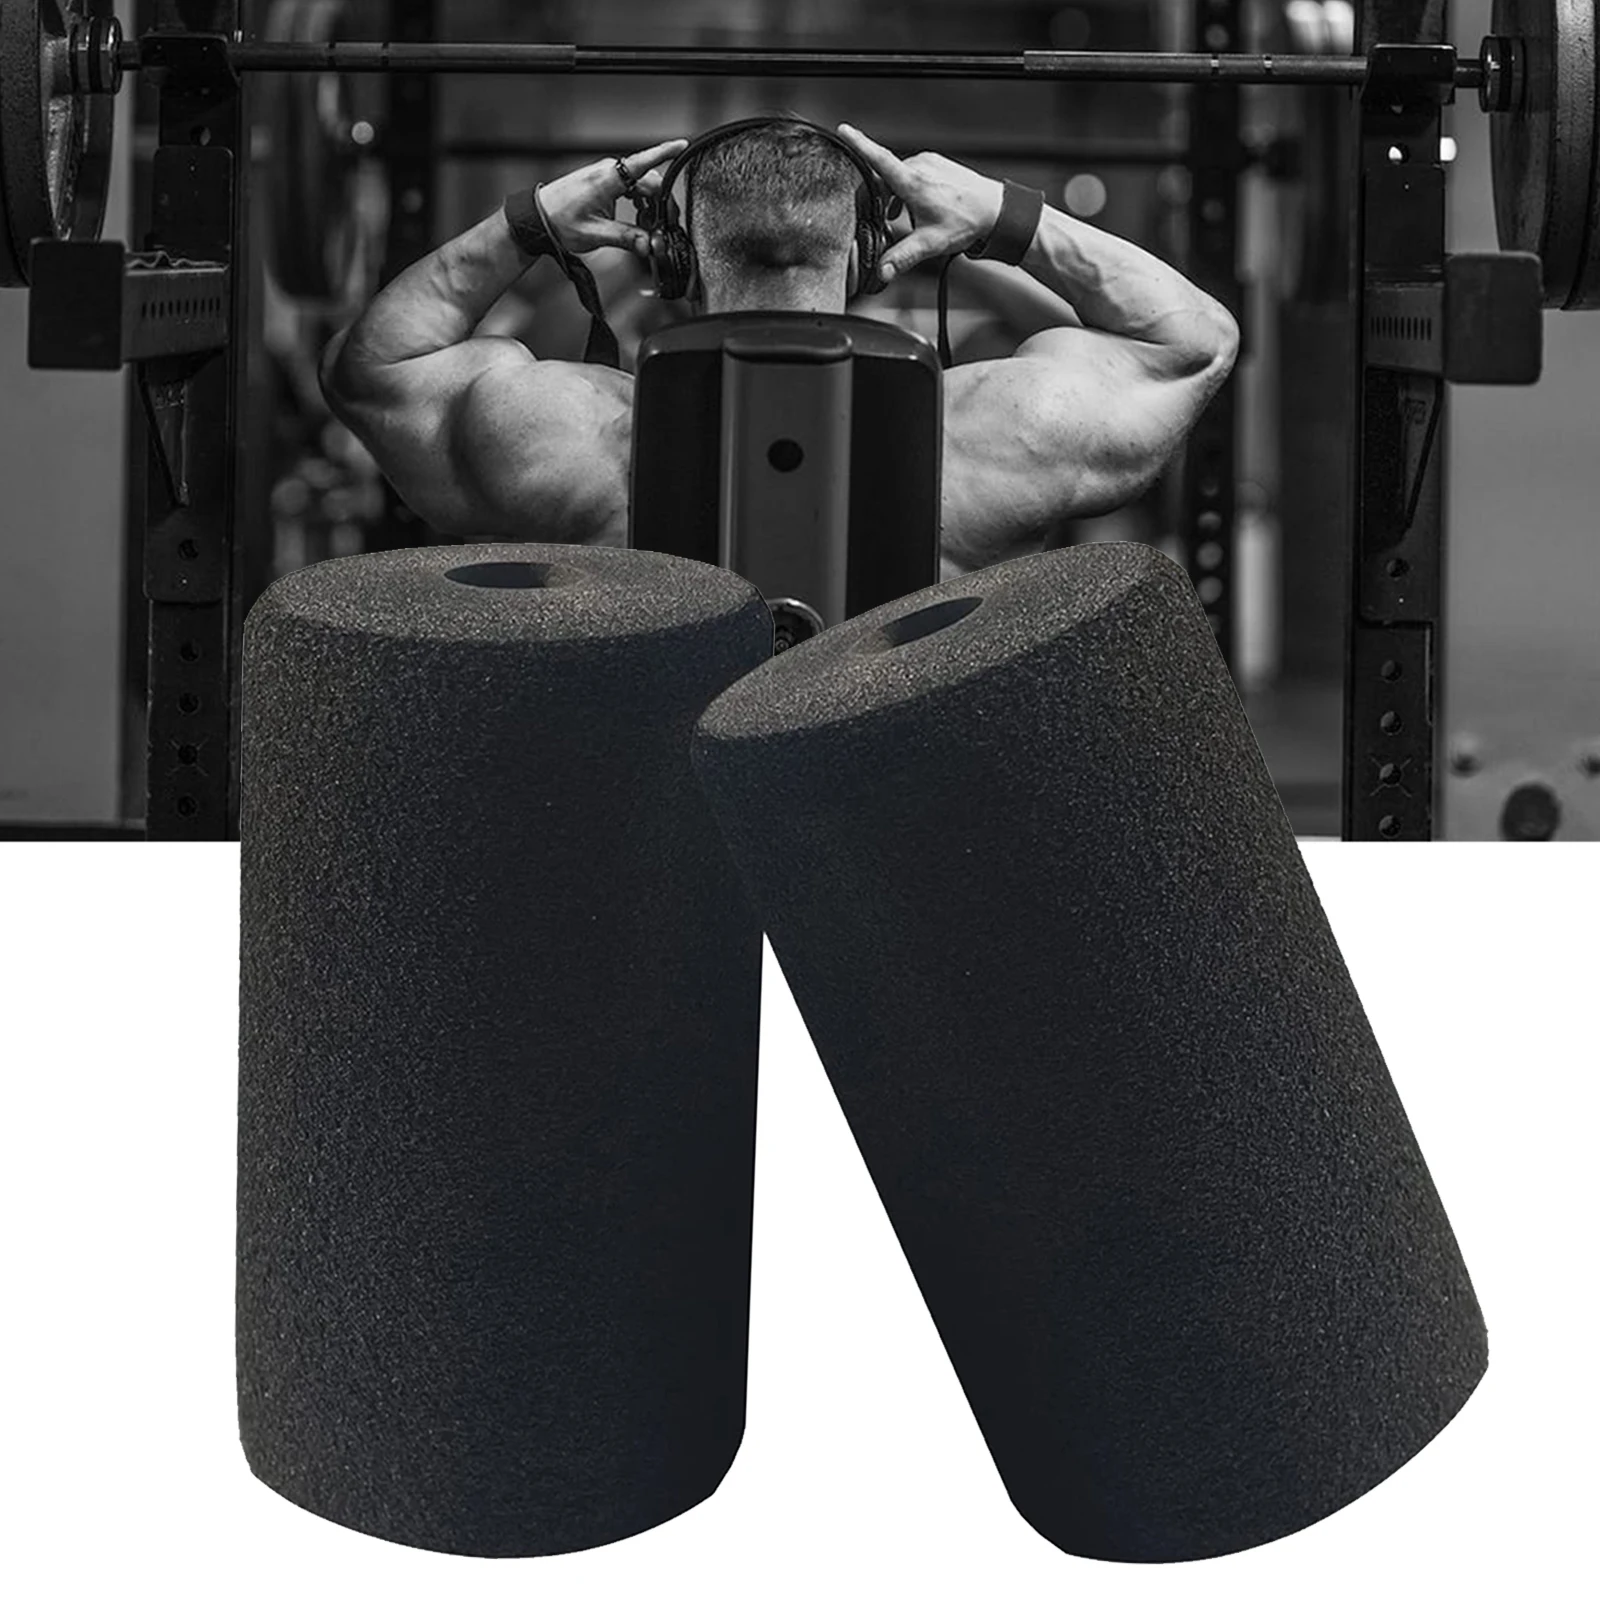 ролики для ног пенопластовые подушки фитнес-оборудование для весовой скамьи снаряжения спортивные товары 2 шт. для разгибания ног совершенно новый 4